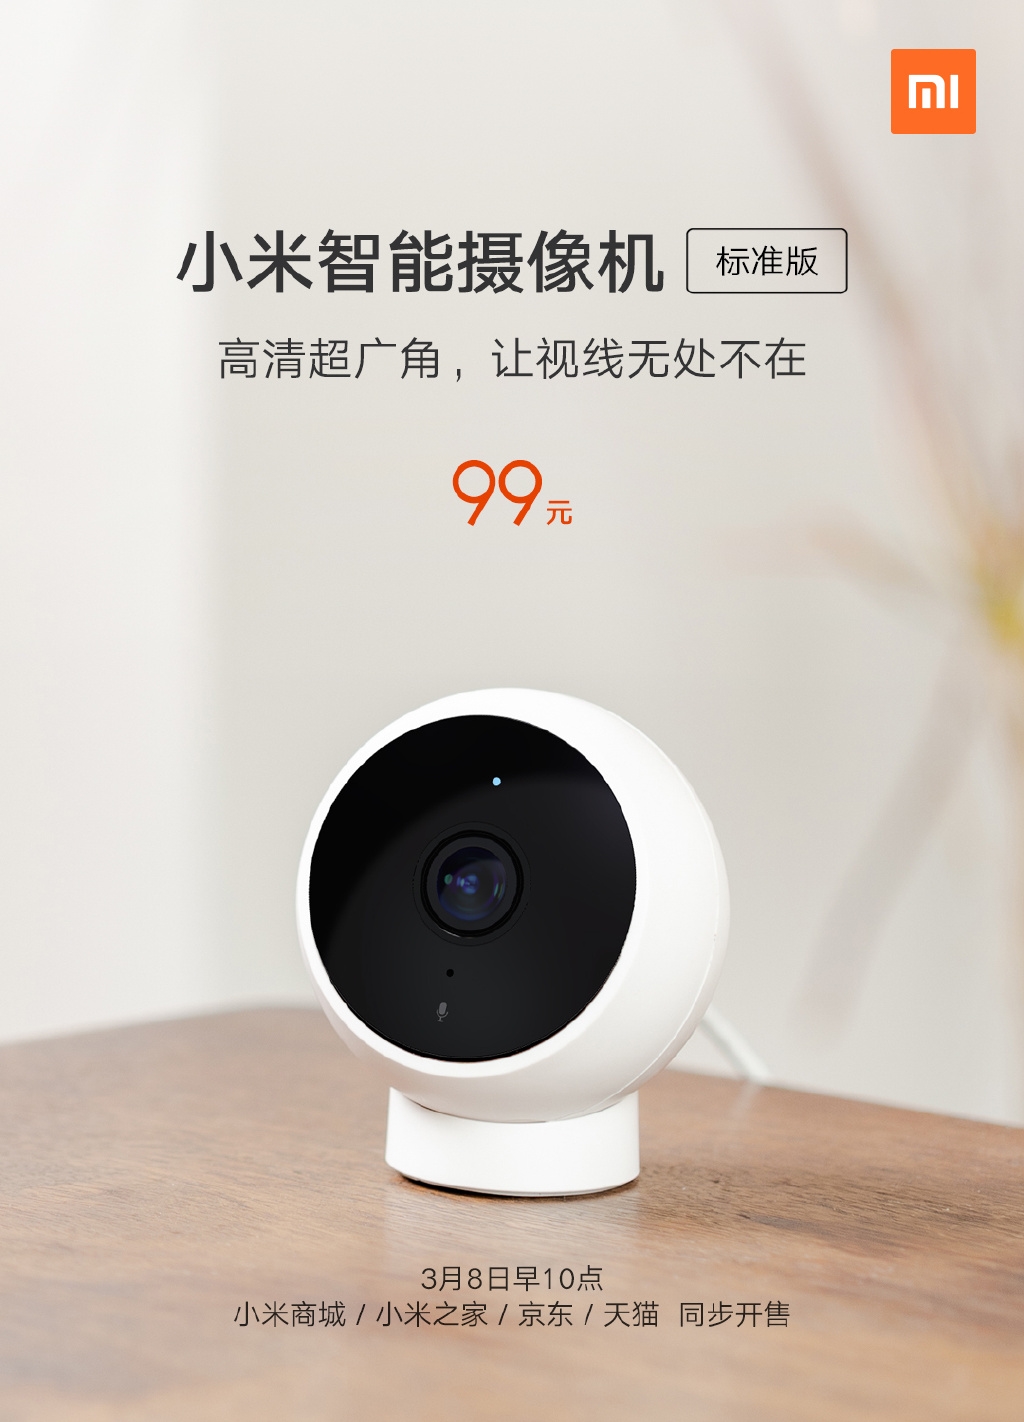 Xiaomi ra mắt camera
giám sát thông minh giá siêu rẻ, chỉ 330.000 đồng